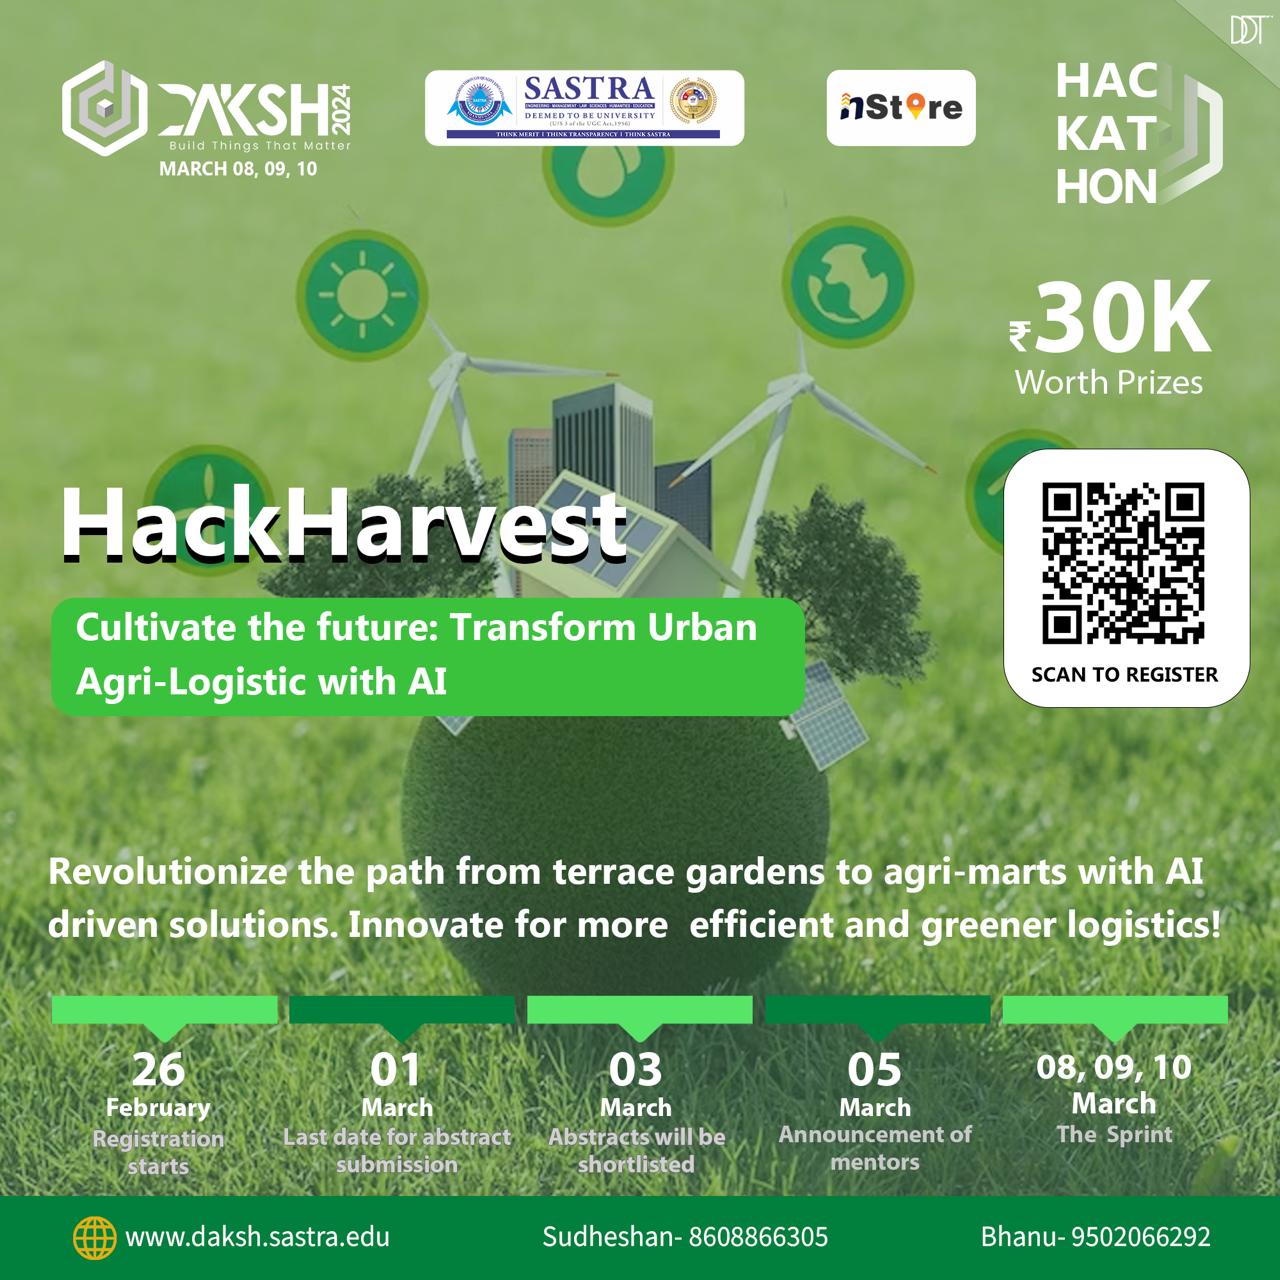 Hack Harvest Hackathon, Thanjavur, Tamil Nadu, India